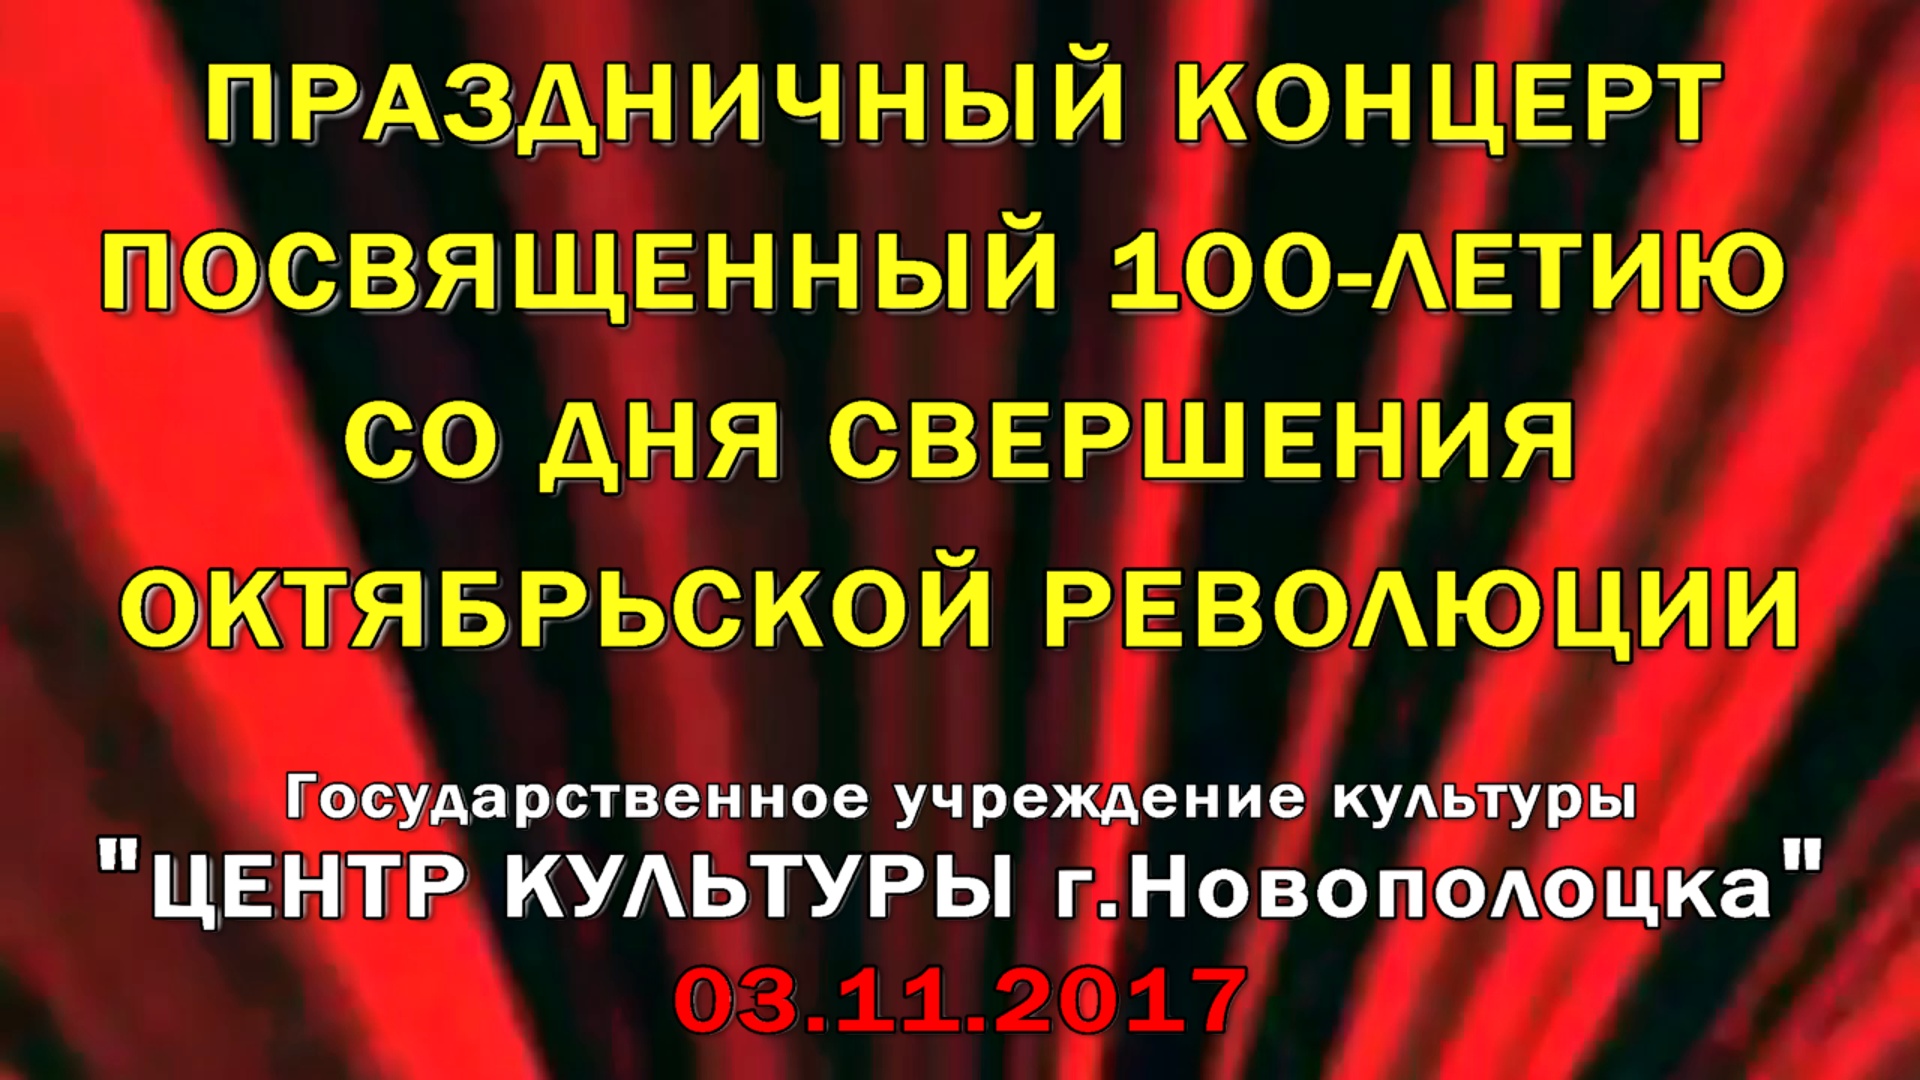 3 октября 2017г. в Центре культуры прошел праздничный концерт посвященный 100-летию со дня свершения октябрьской революции
